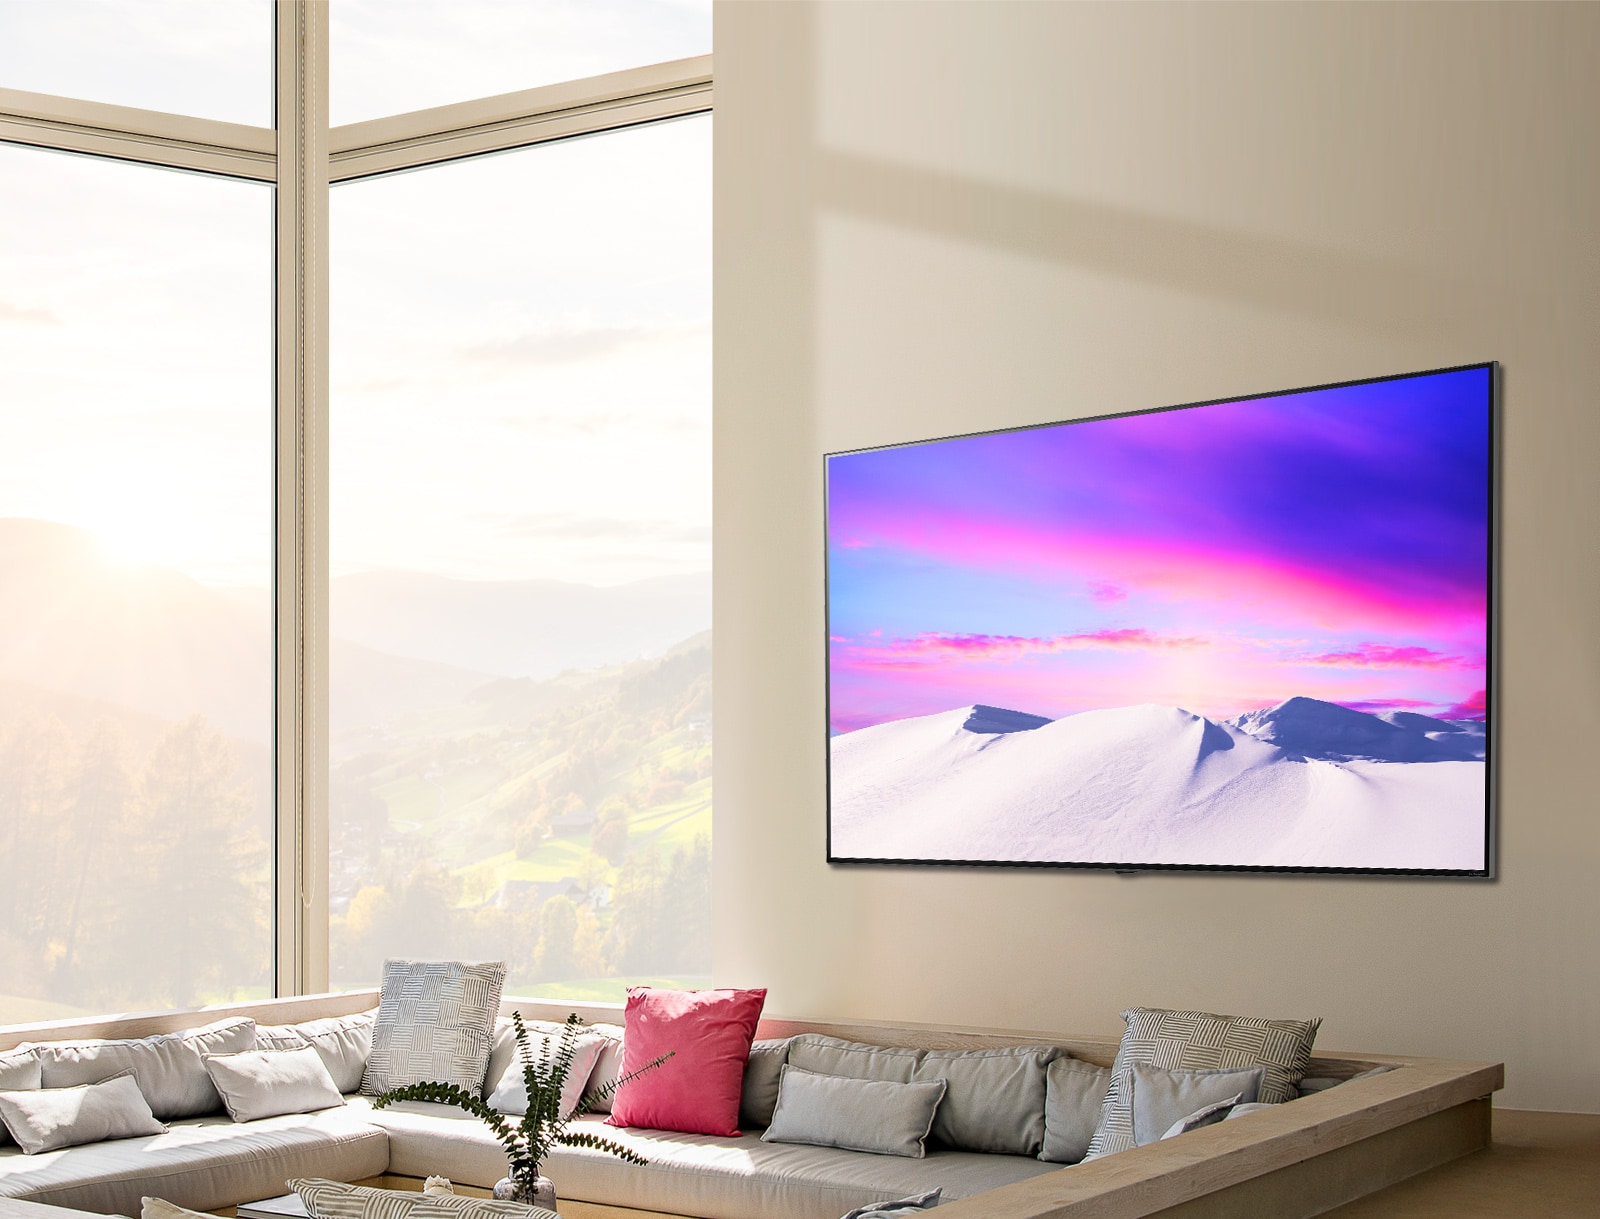 Una escena muestra el LG NanoCell TV, grande y delgado, colgado en posición horizontal contra la pared.